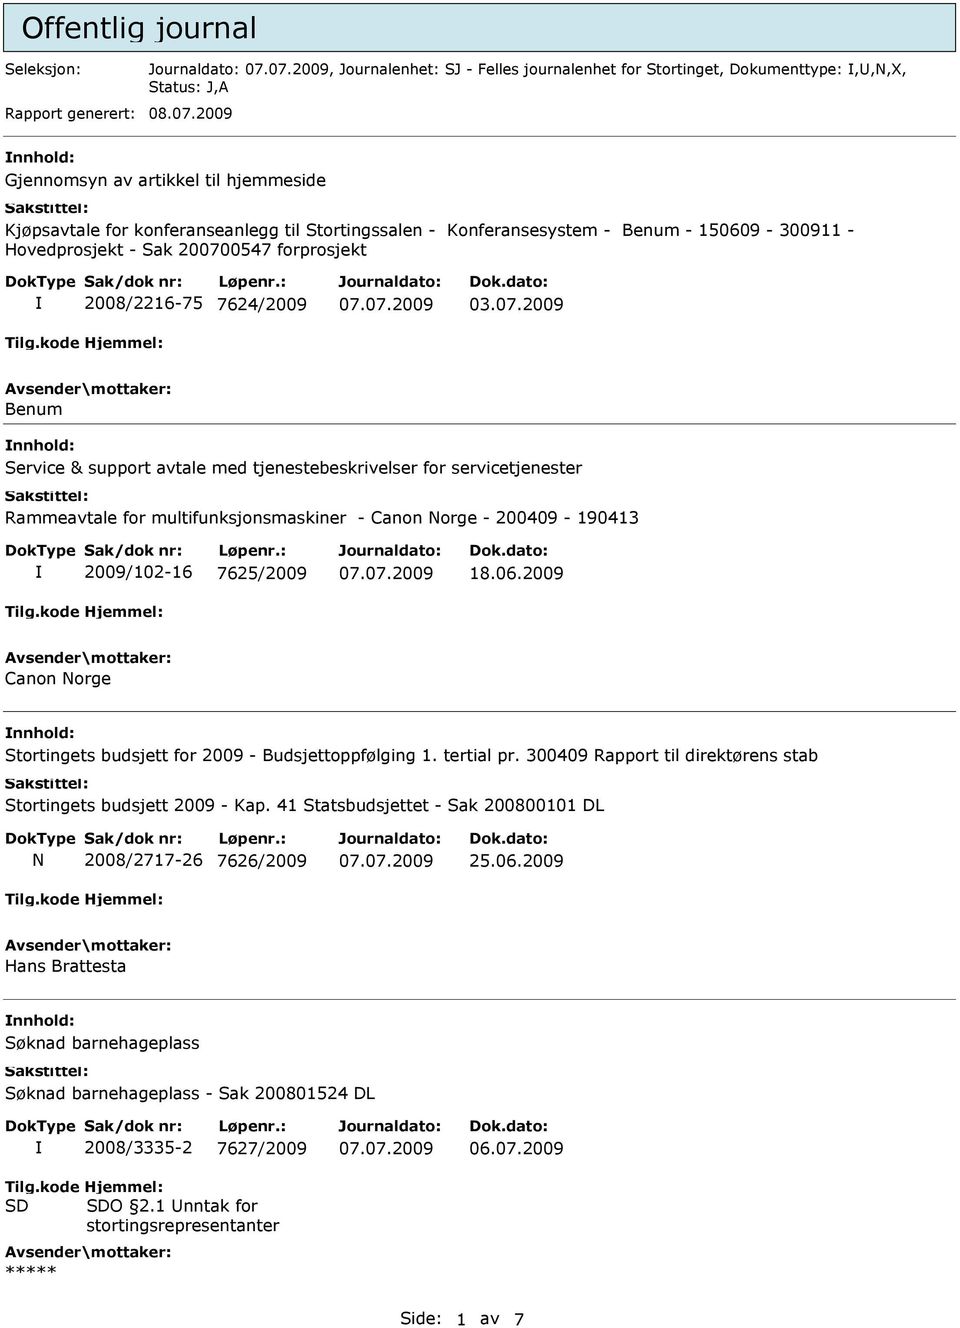 7624/2009 03.07.2009 Benum Service & support avtale med tjenestebeskrivelser for servicetjenester Rammeavtale for multifunksjonsmaskiner - Canon Norge - 200409-190413 2009/102-16 7625/2009 18.06.